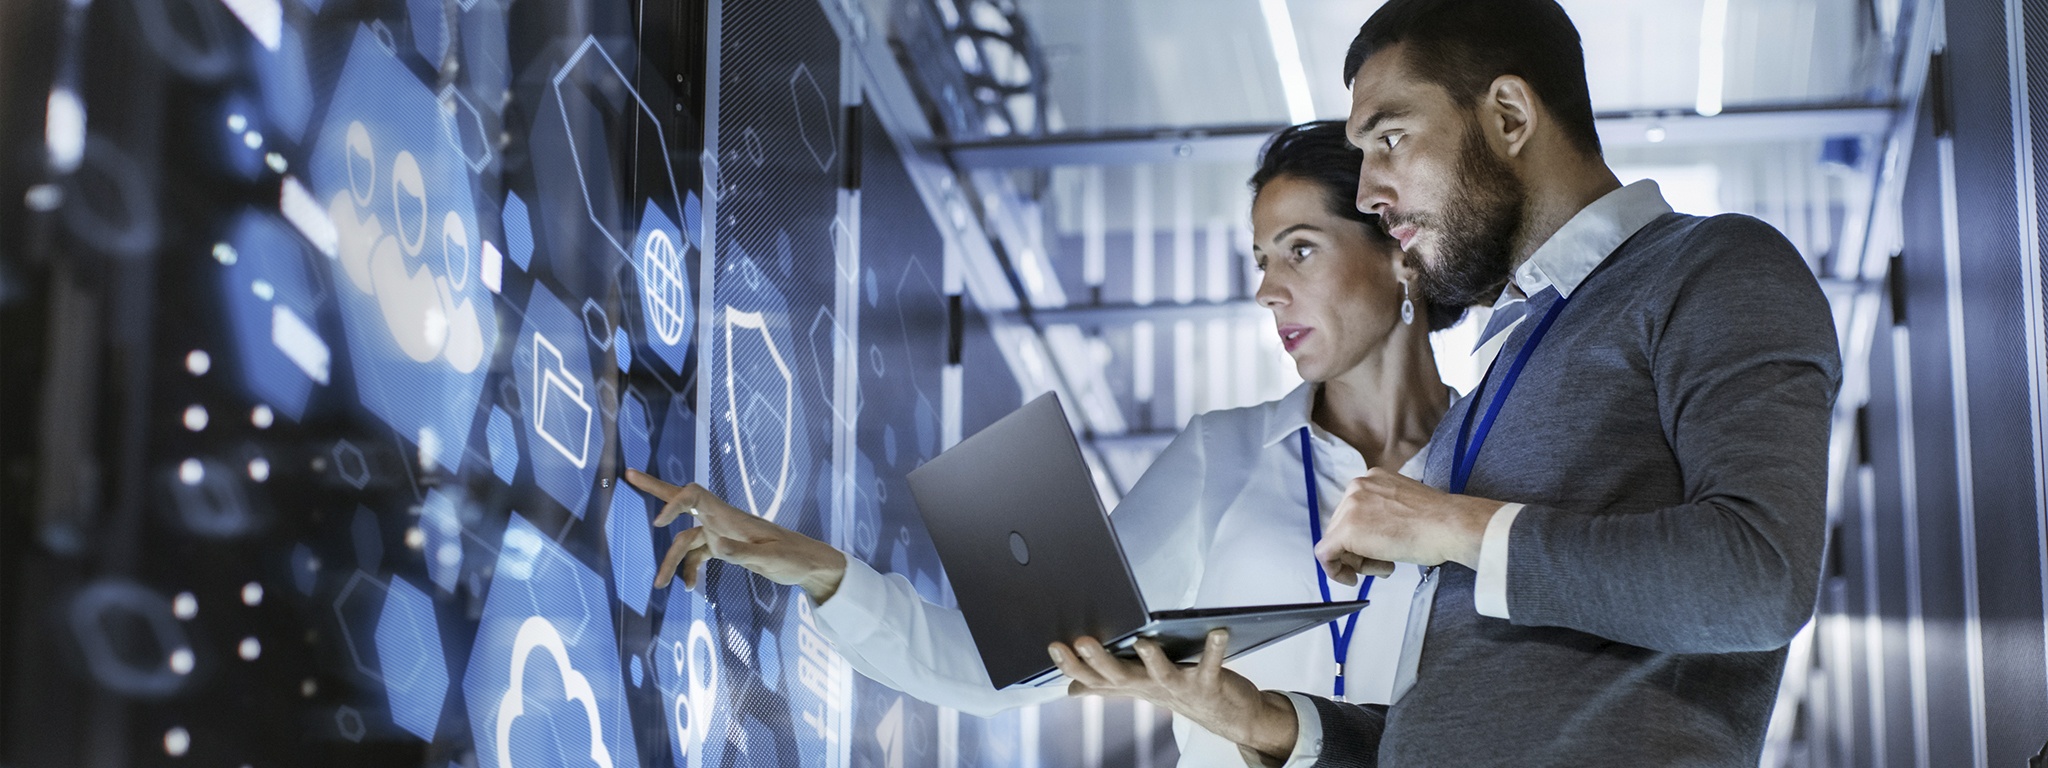 Immagine di uno specialista IT che tiene in mano un laptop mentre parla con un tecnico server in una sala server di un data center